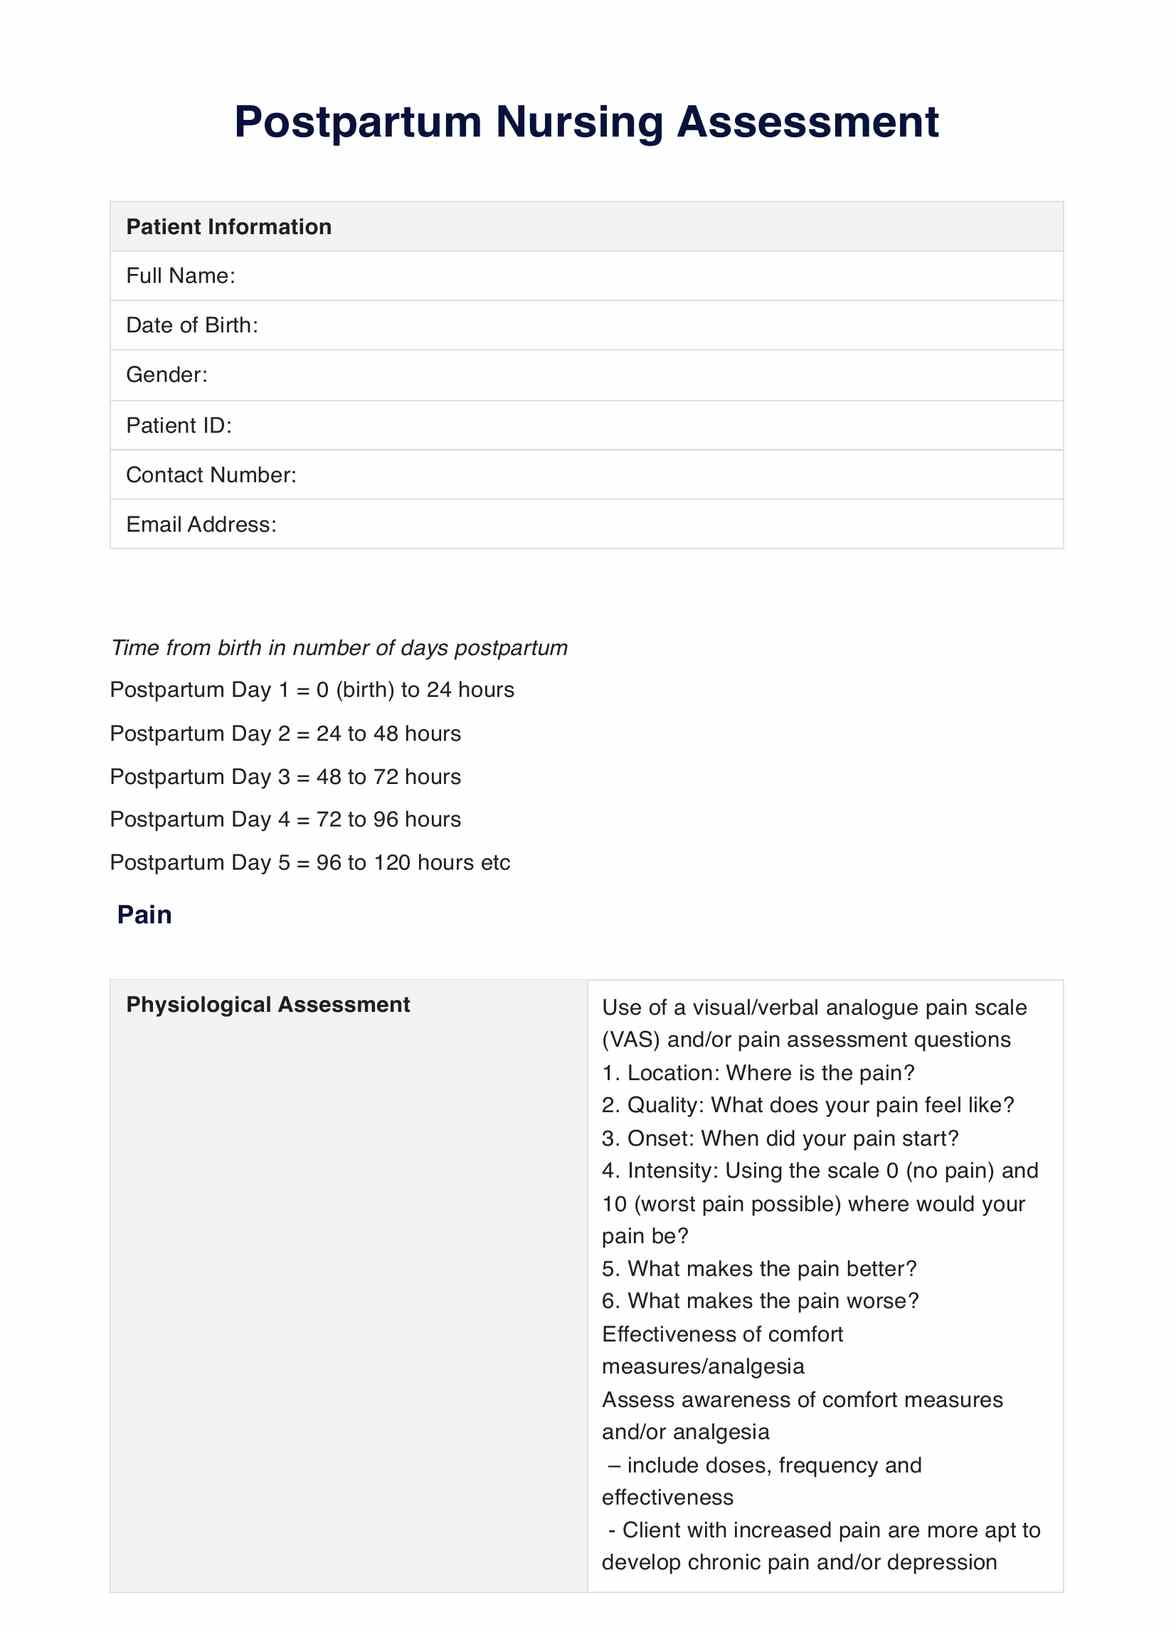 Nursing Postpartum Assessment PDF Example